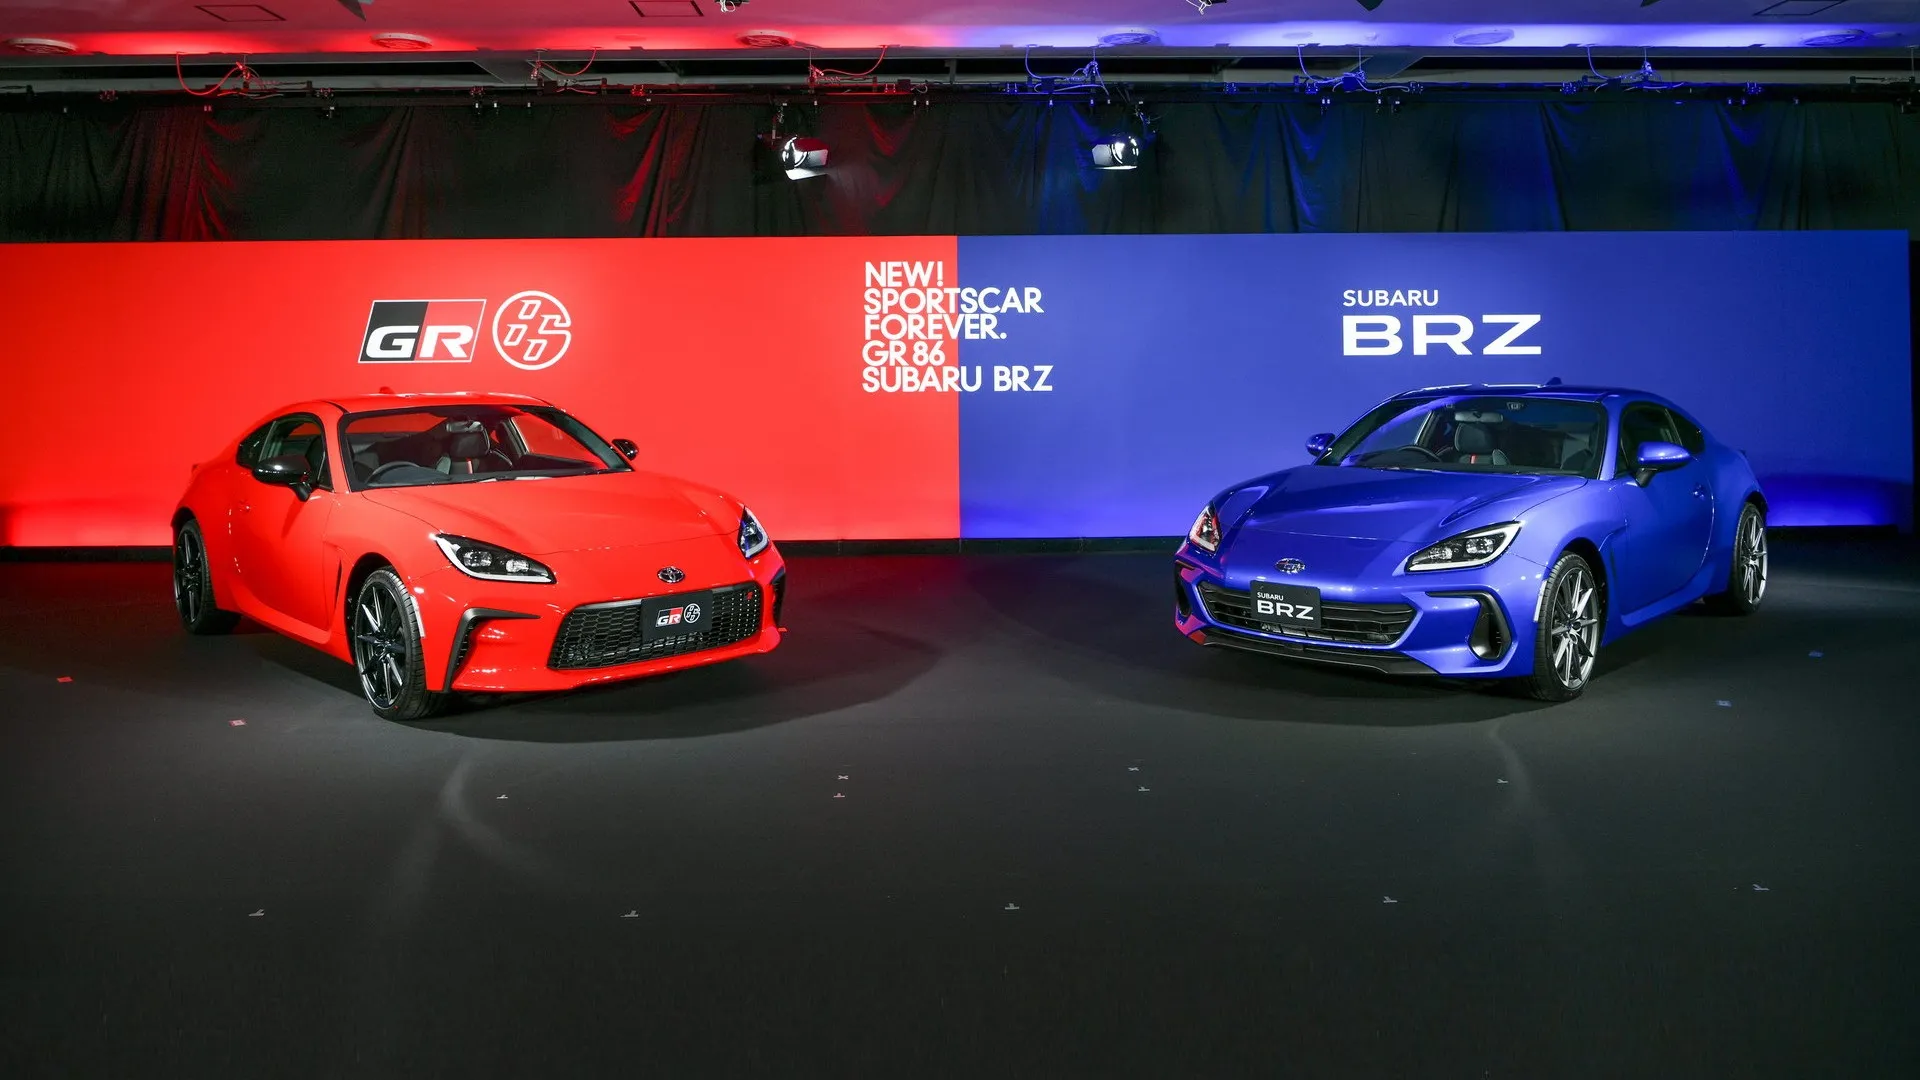 Lucha fratricida: el Toyota GR86 vende cinco veces más que el Subaru BRZ en EE.UU.